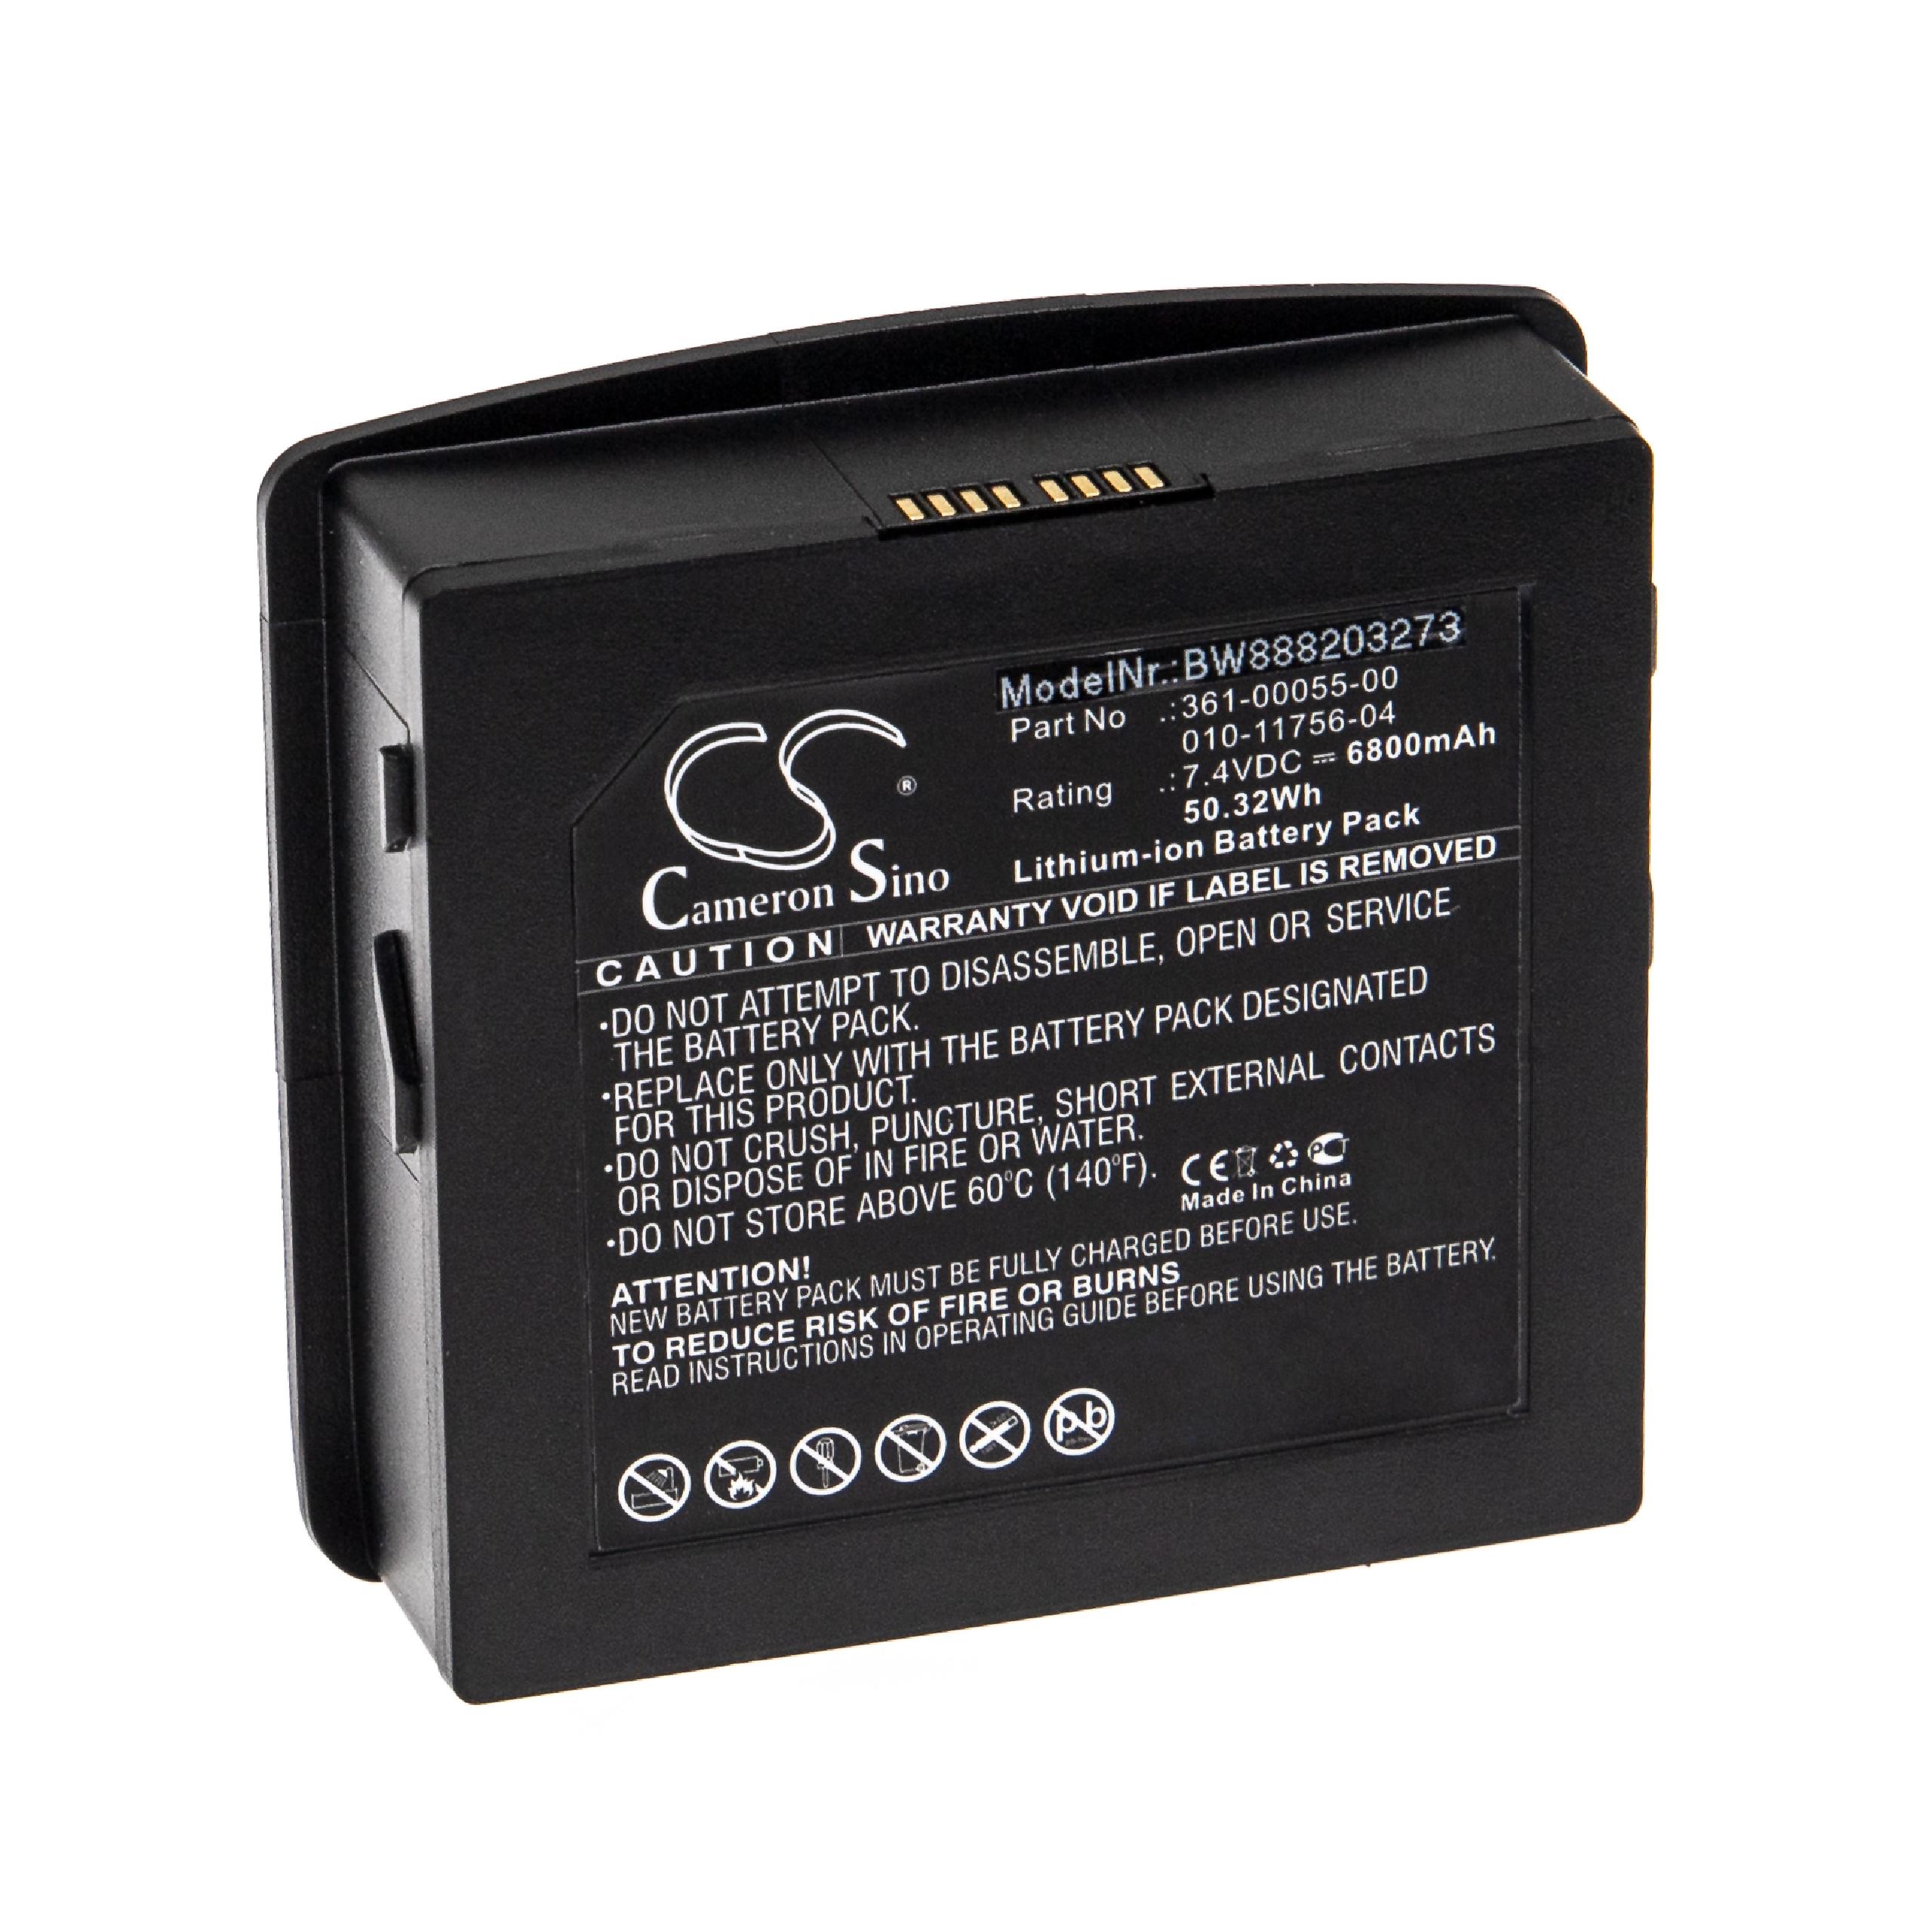 Batterie remplace Garmin 361-00055-00, 010-11756-04 pour navigation GPS - 6800mAh 7,4V Li-ion